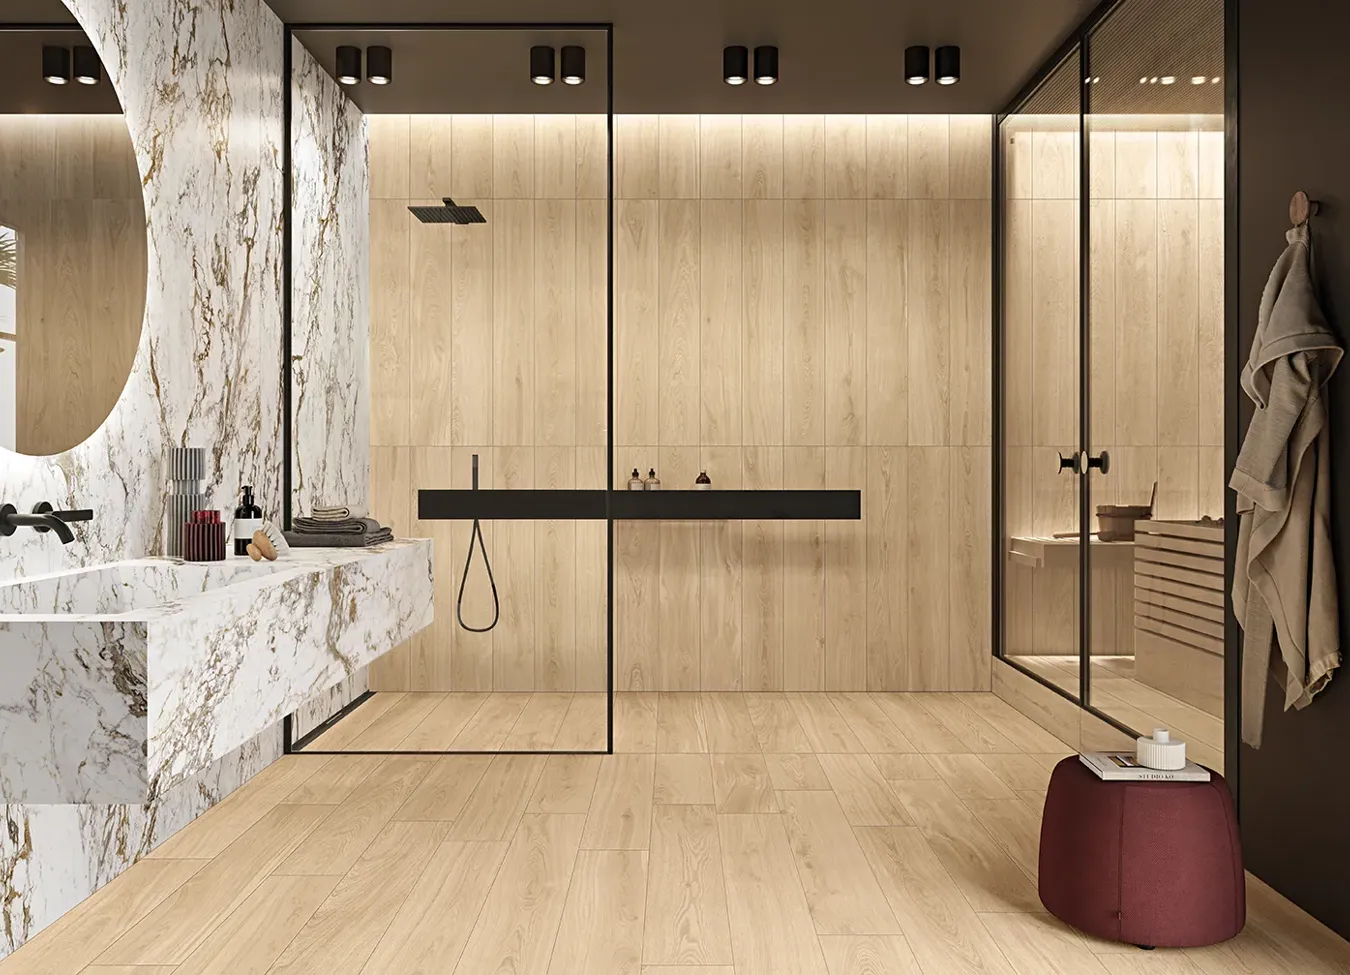 Salle de bain sophistiquée avec sol et receveur de douche en lattes rectangulaires de grès cérame effet bois, ajoutant chaleur et style naturel.